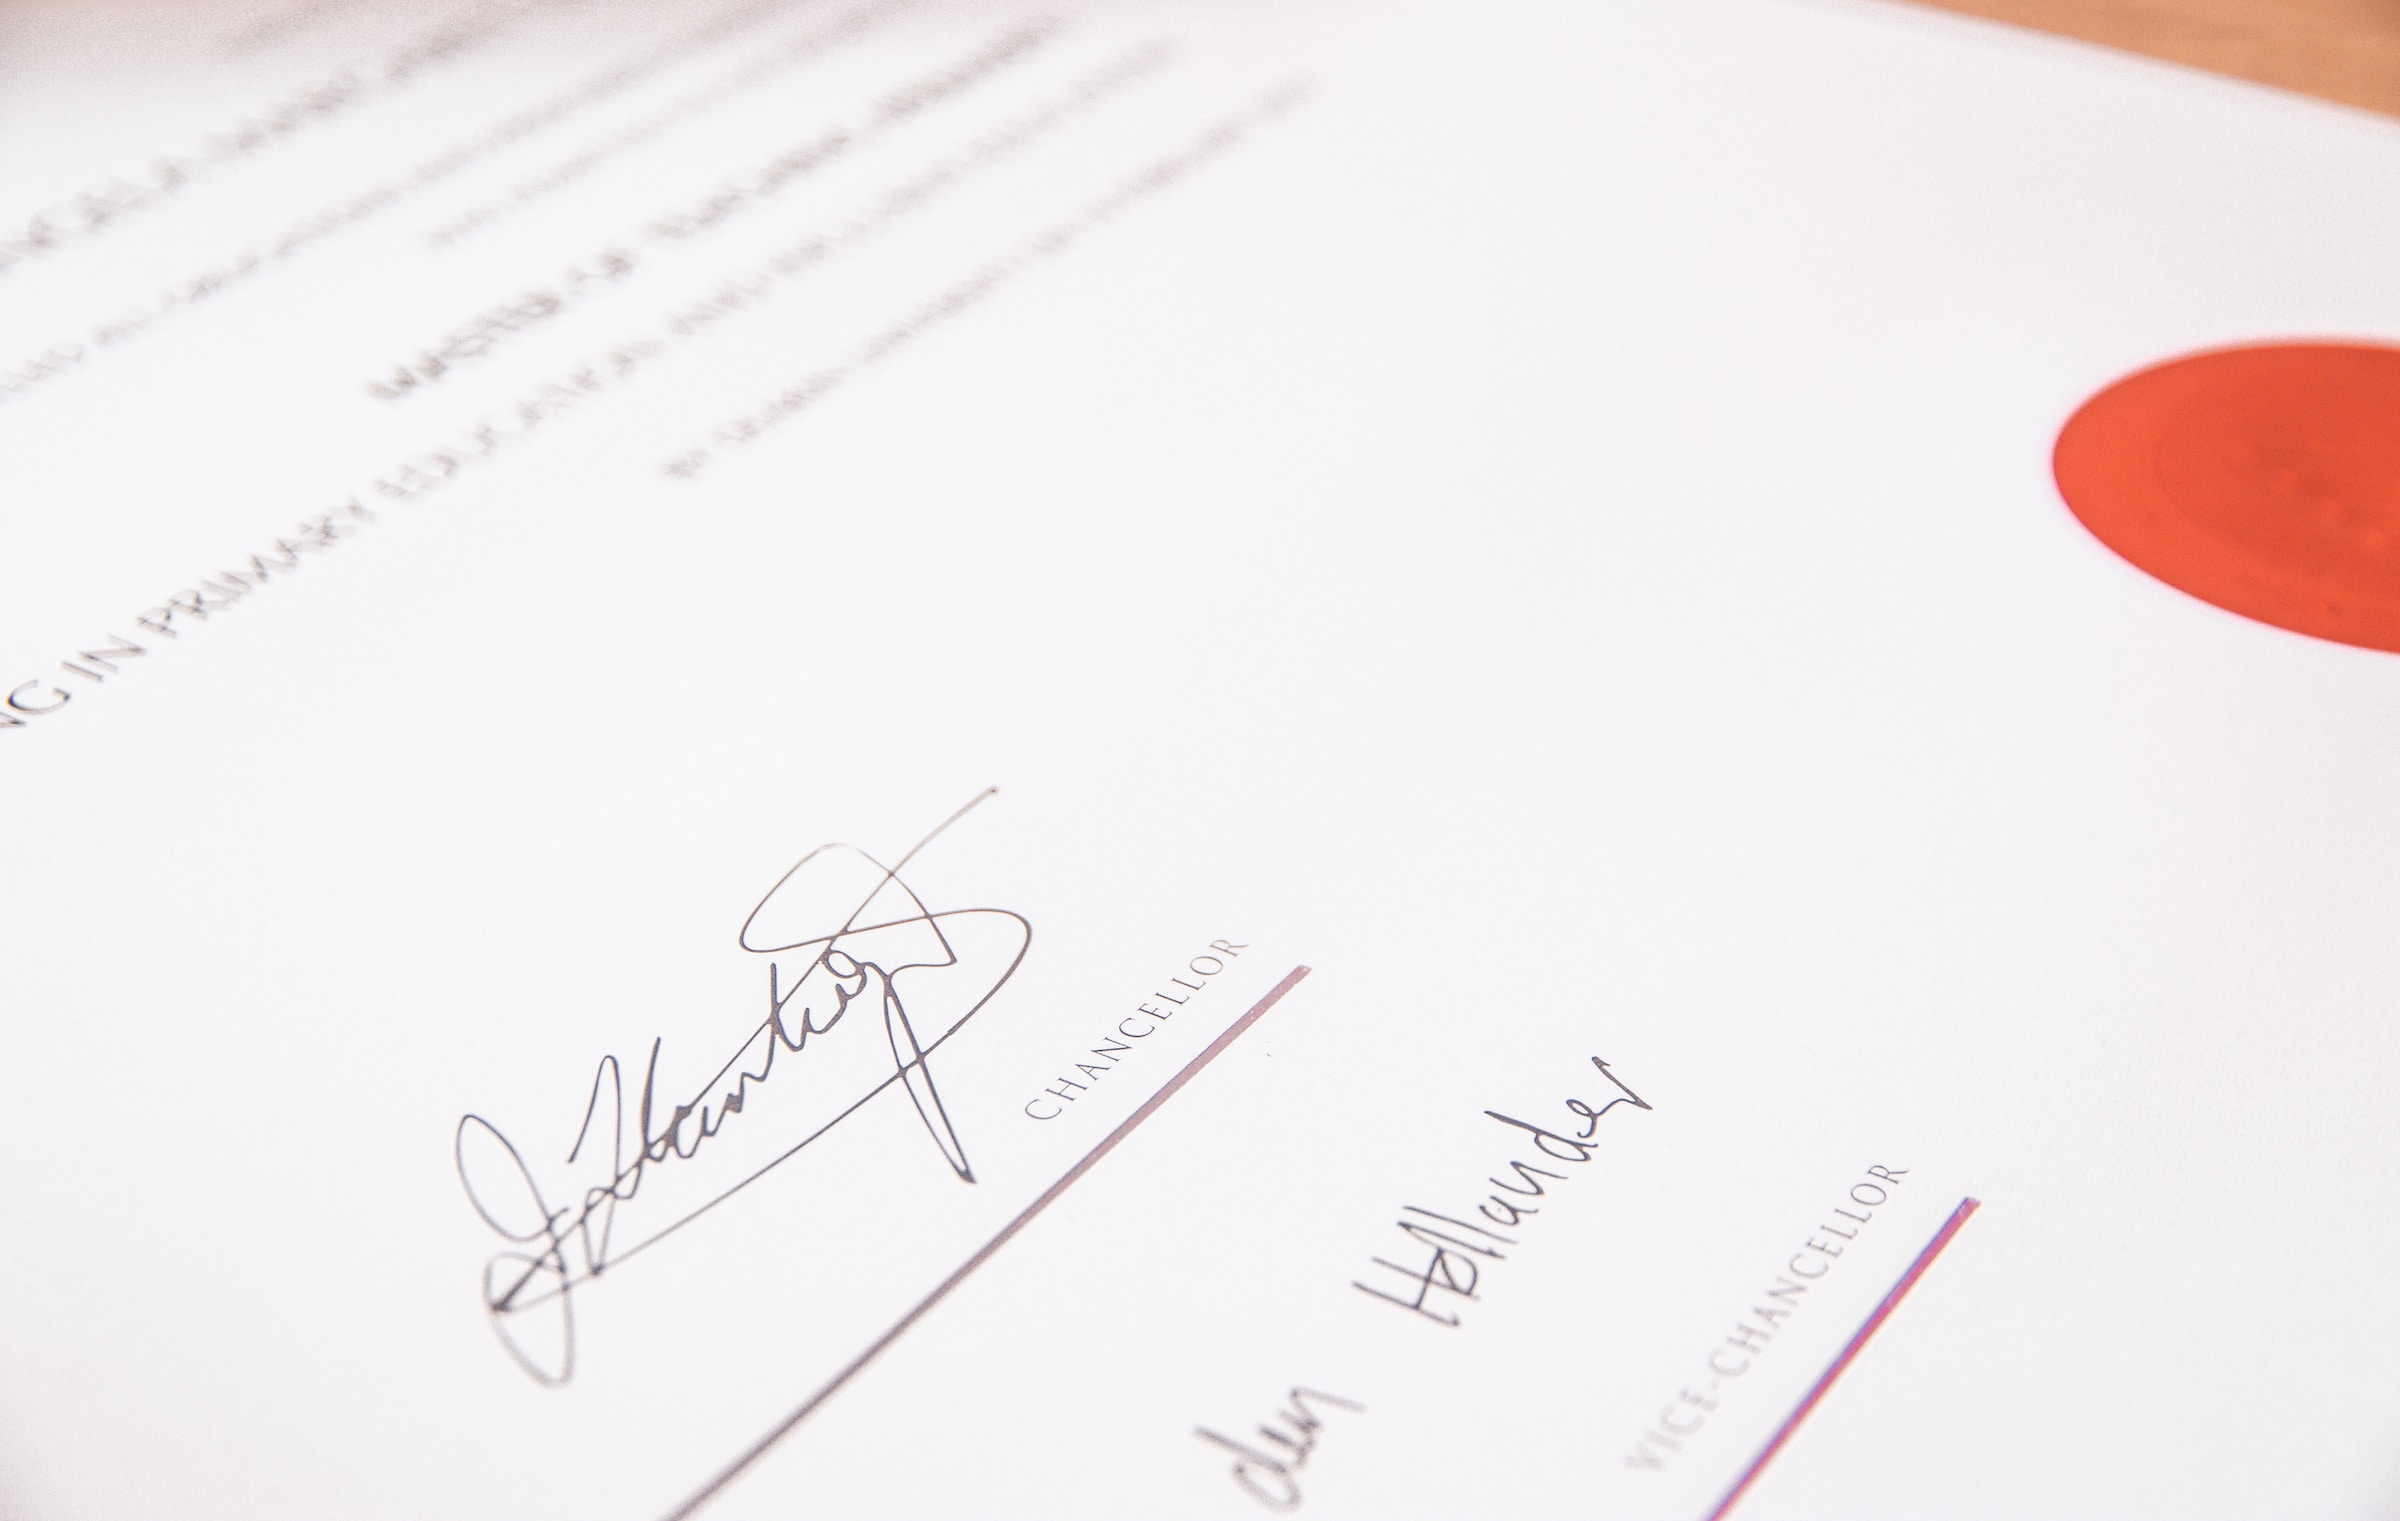 Formulaire juridique avec signatures | Source : Unsplash